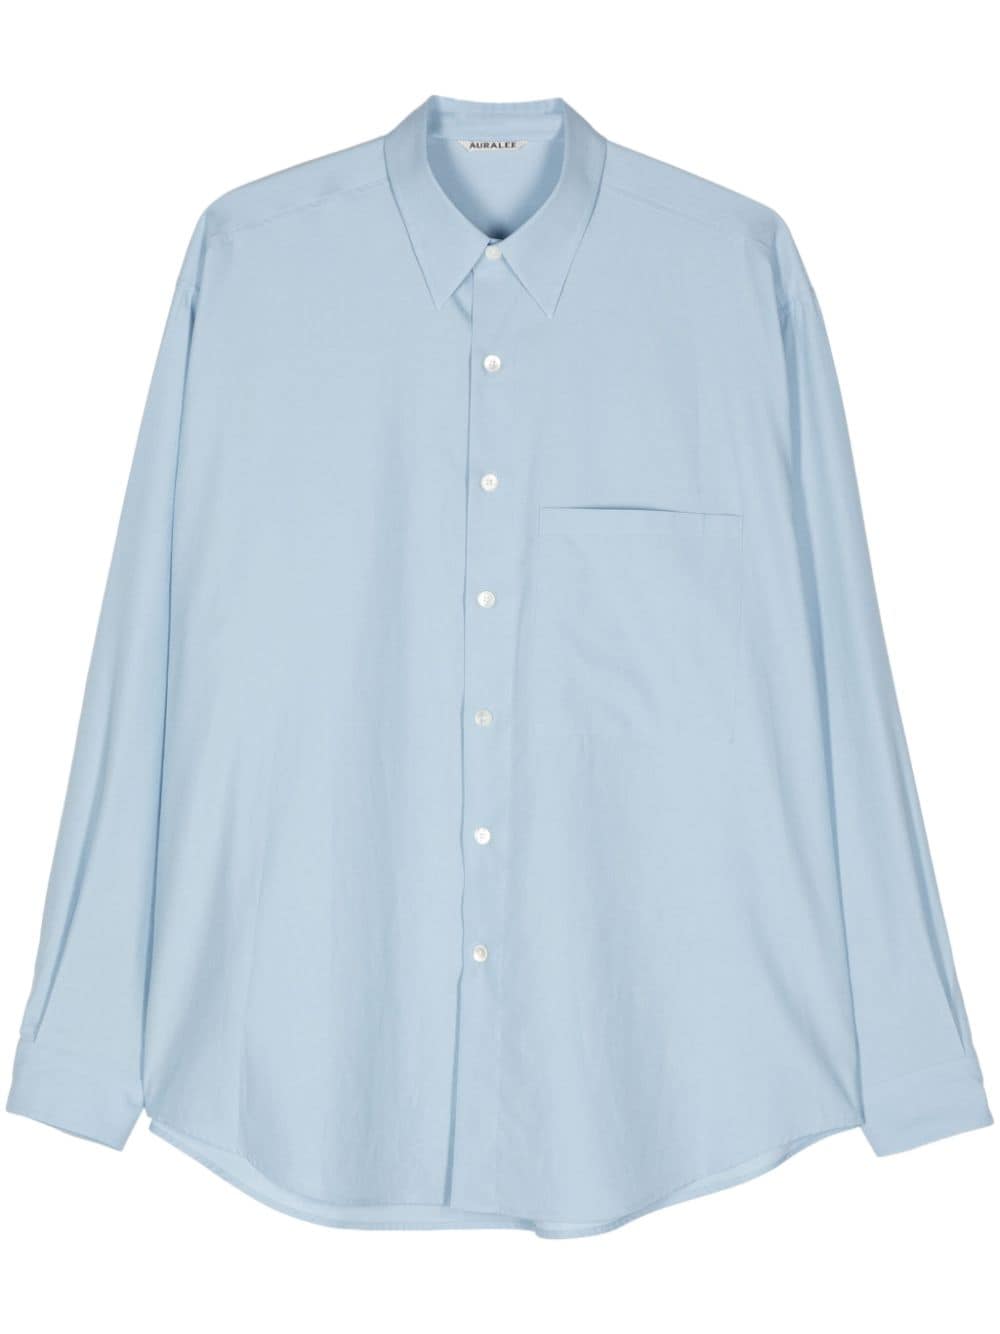 Auralee Finx cotton buttoned shirt - Blue von Auralee